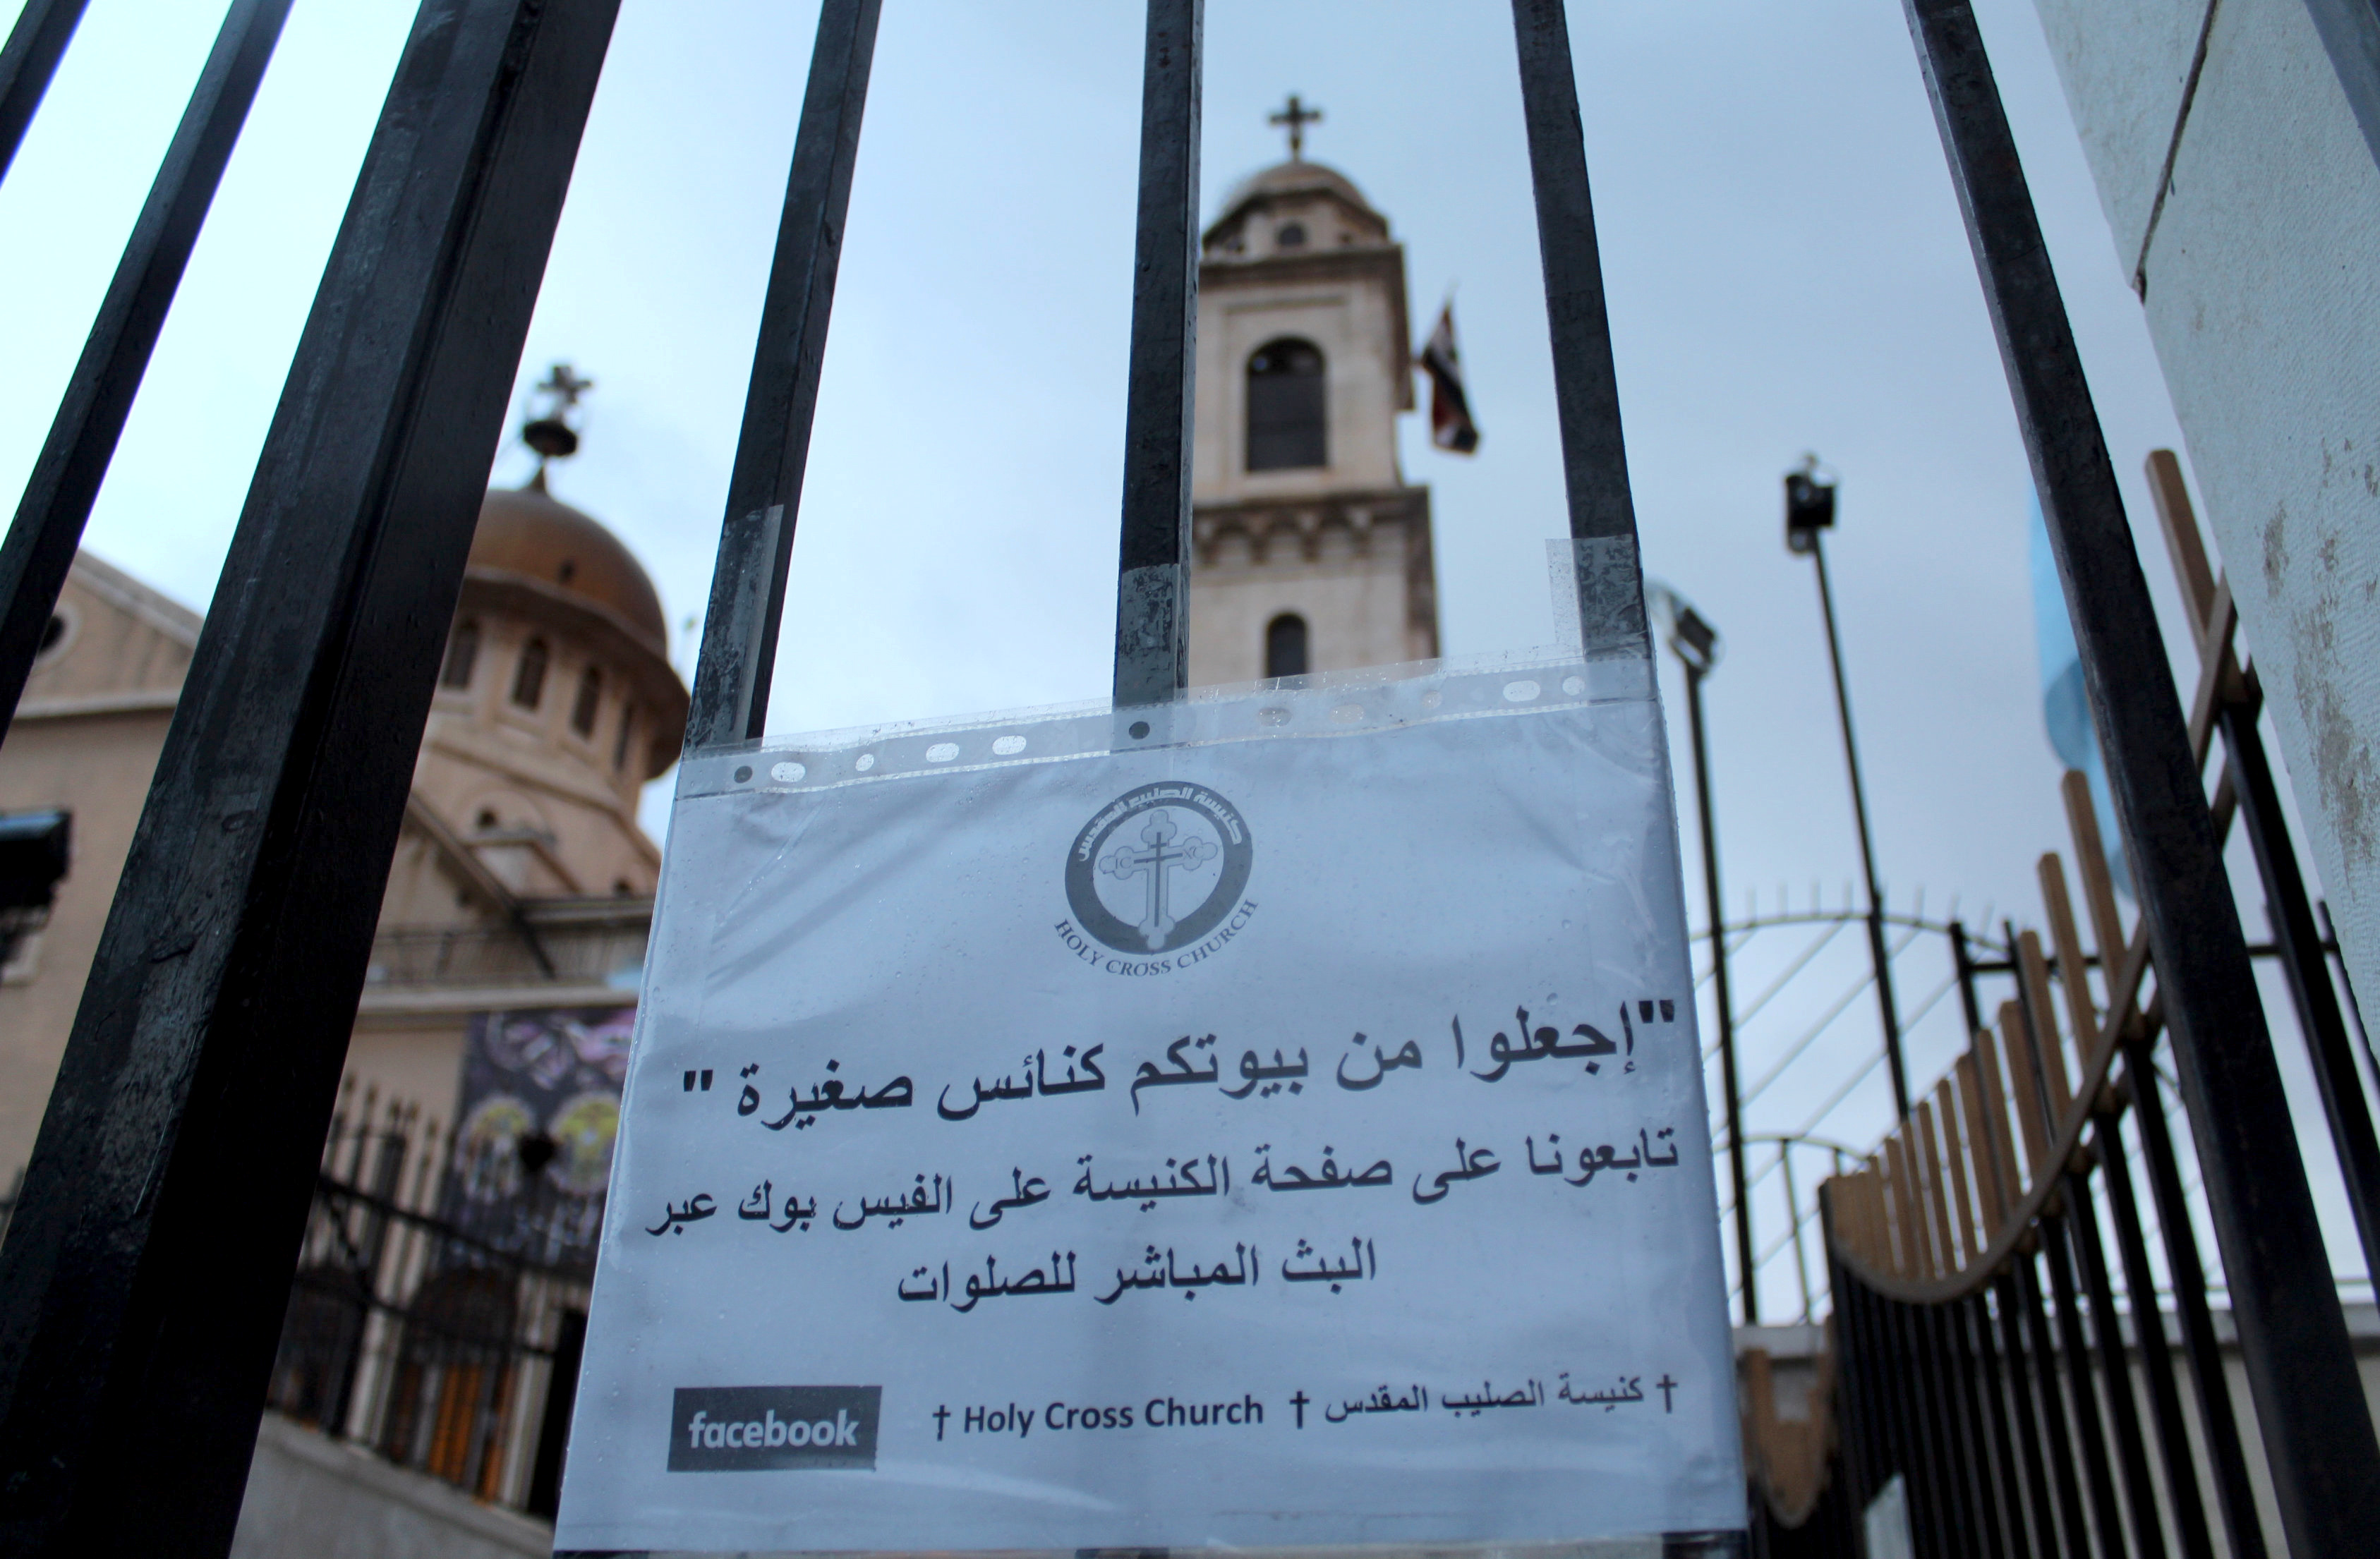 لافتة تطالب الناس بالصلاة فى المنزل على باب كنيسة فى دمشق